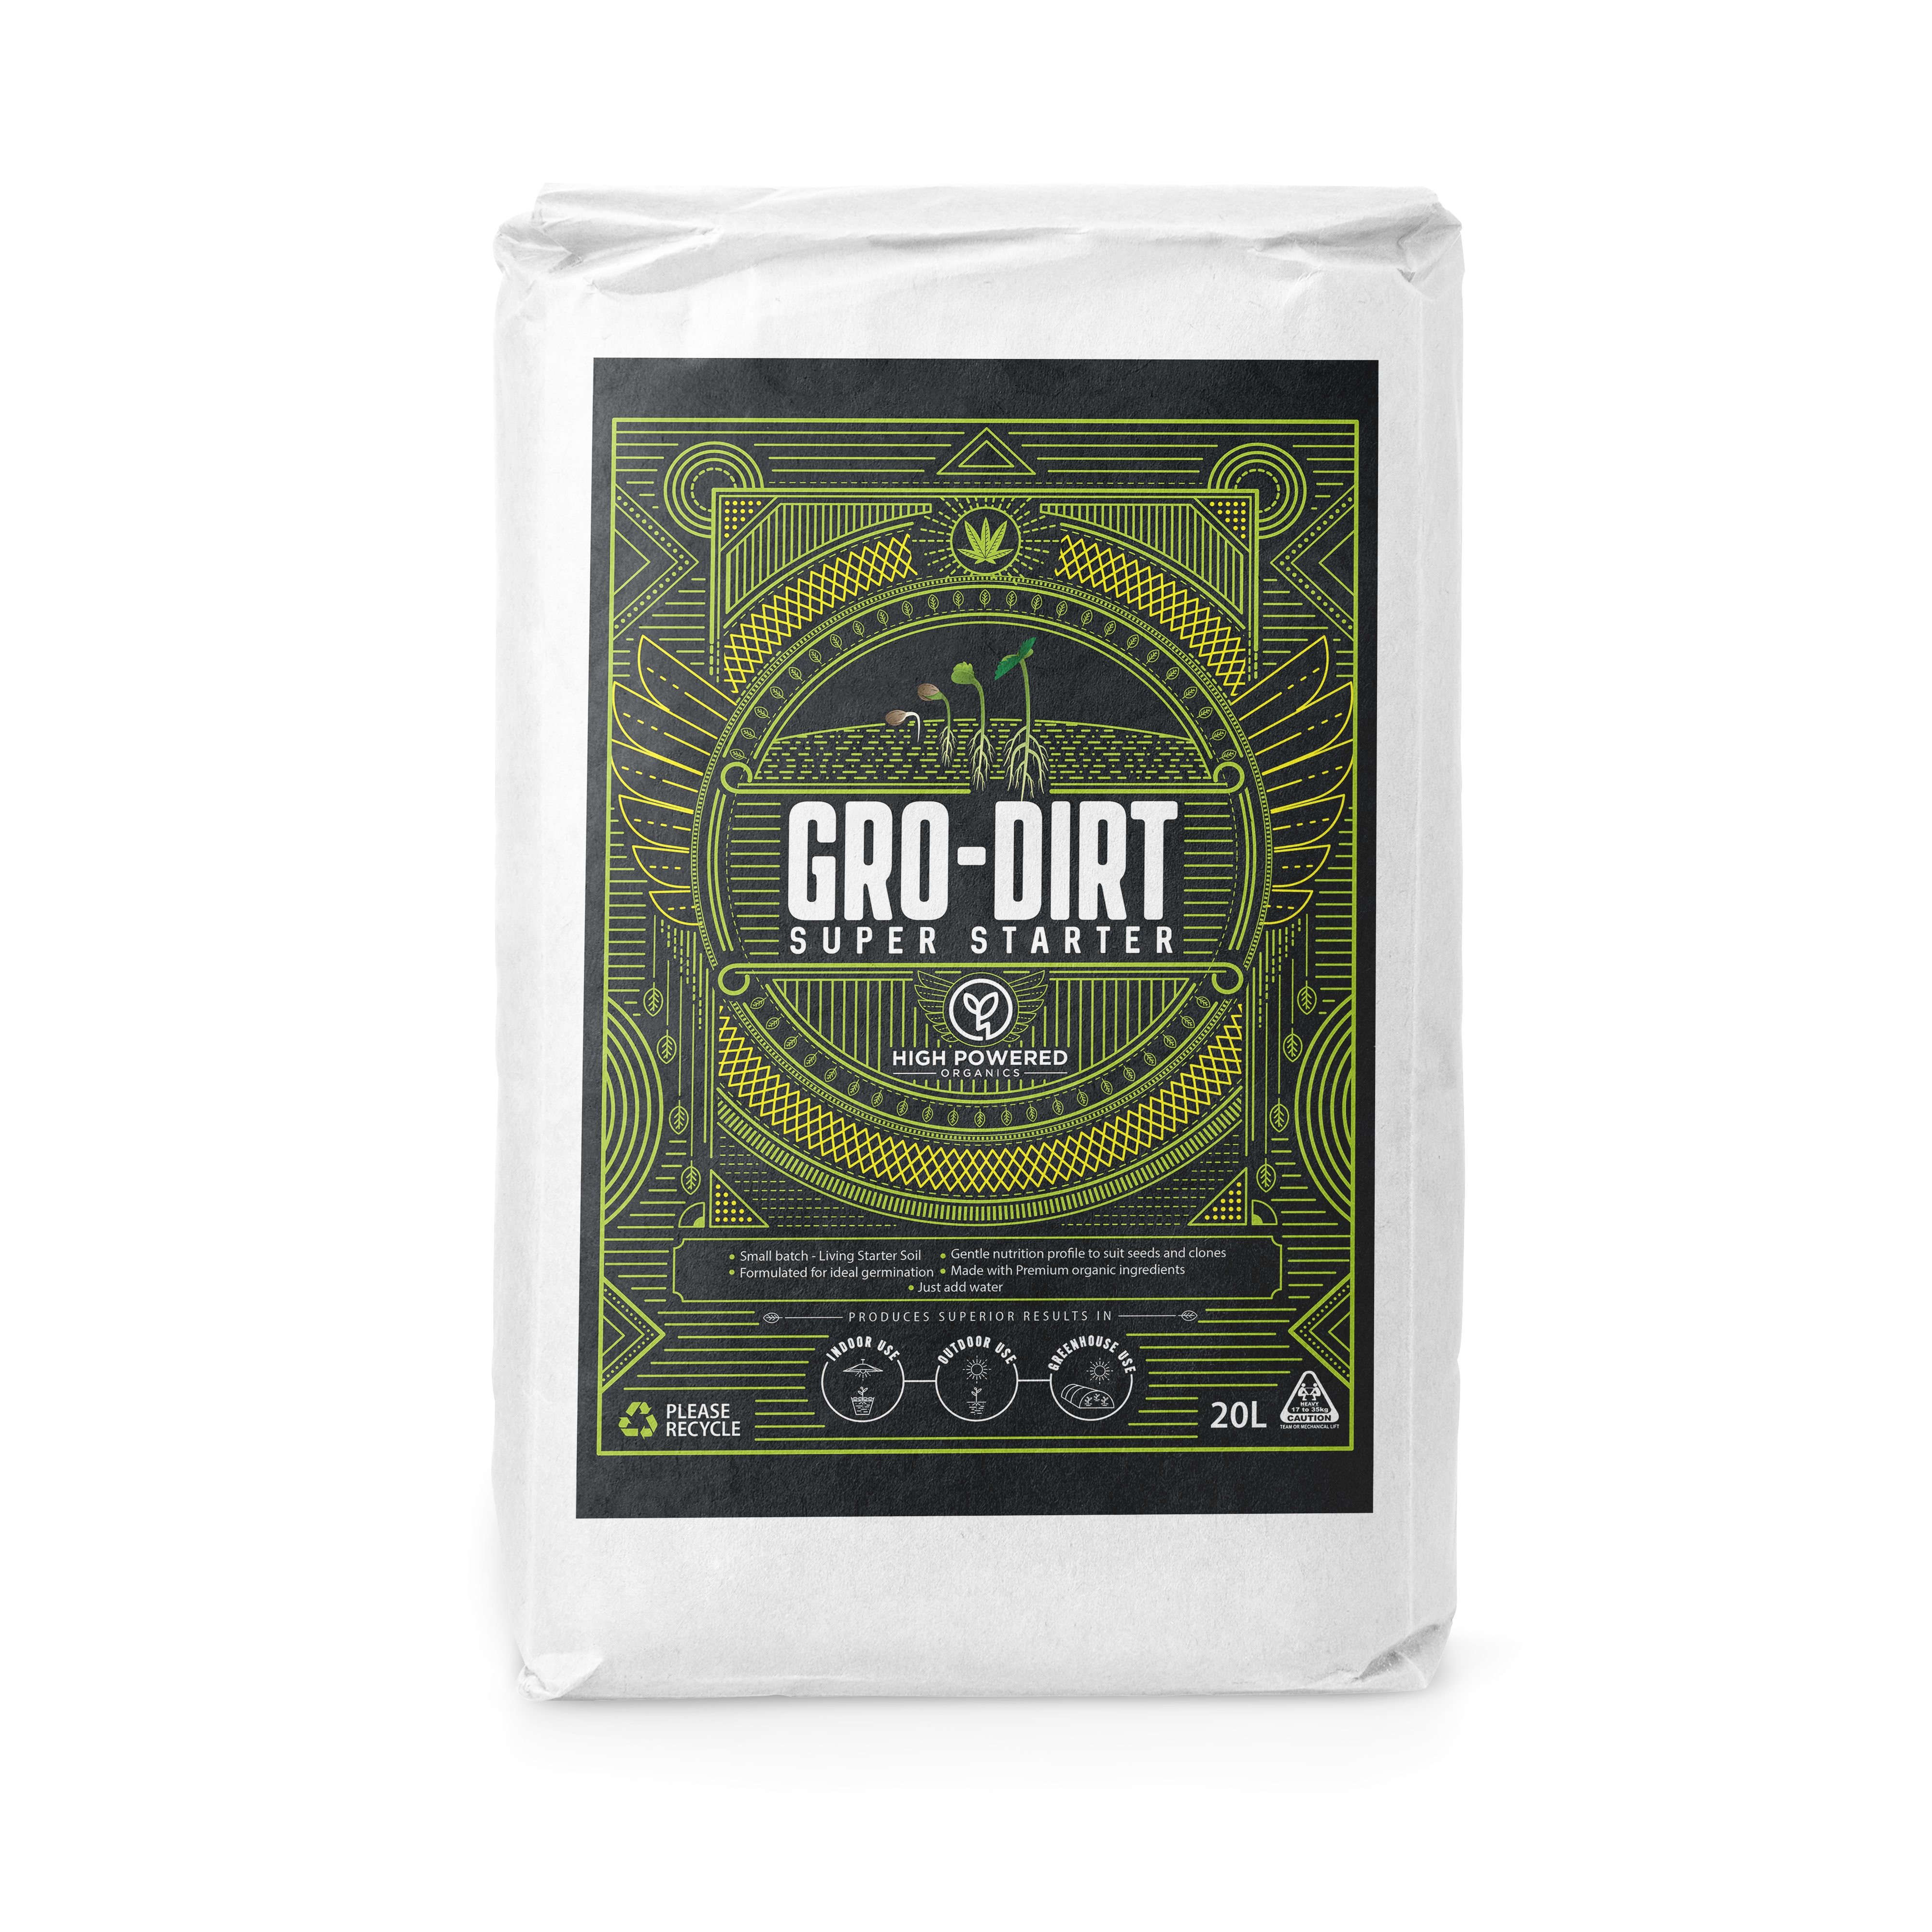 GRO-DIRT™ SUPER STARTER Organic Living Super Soil